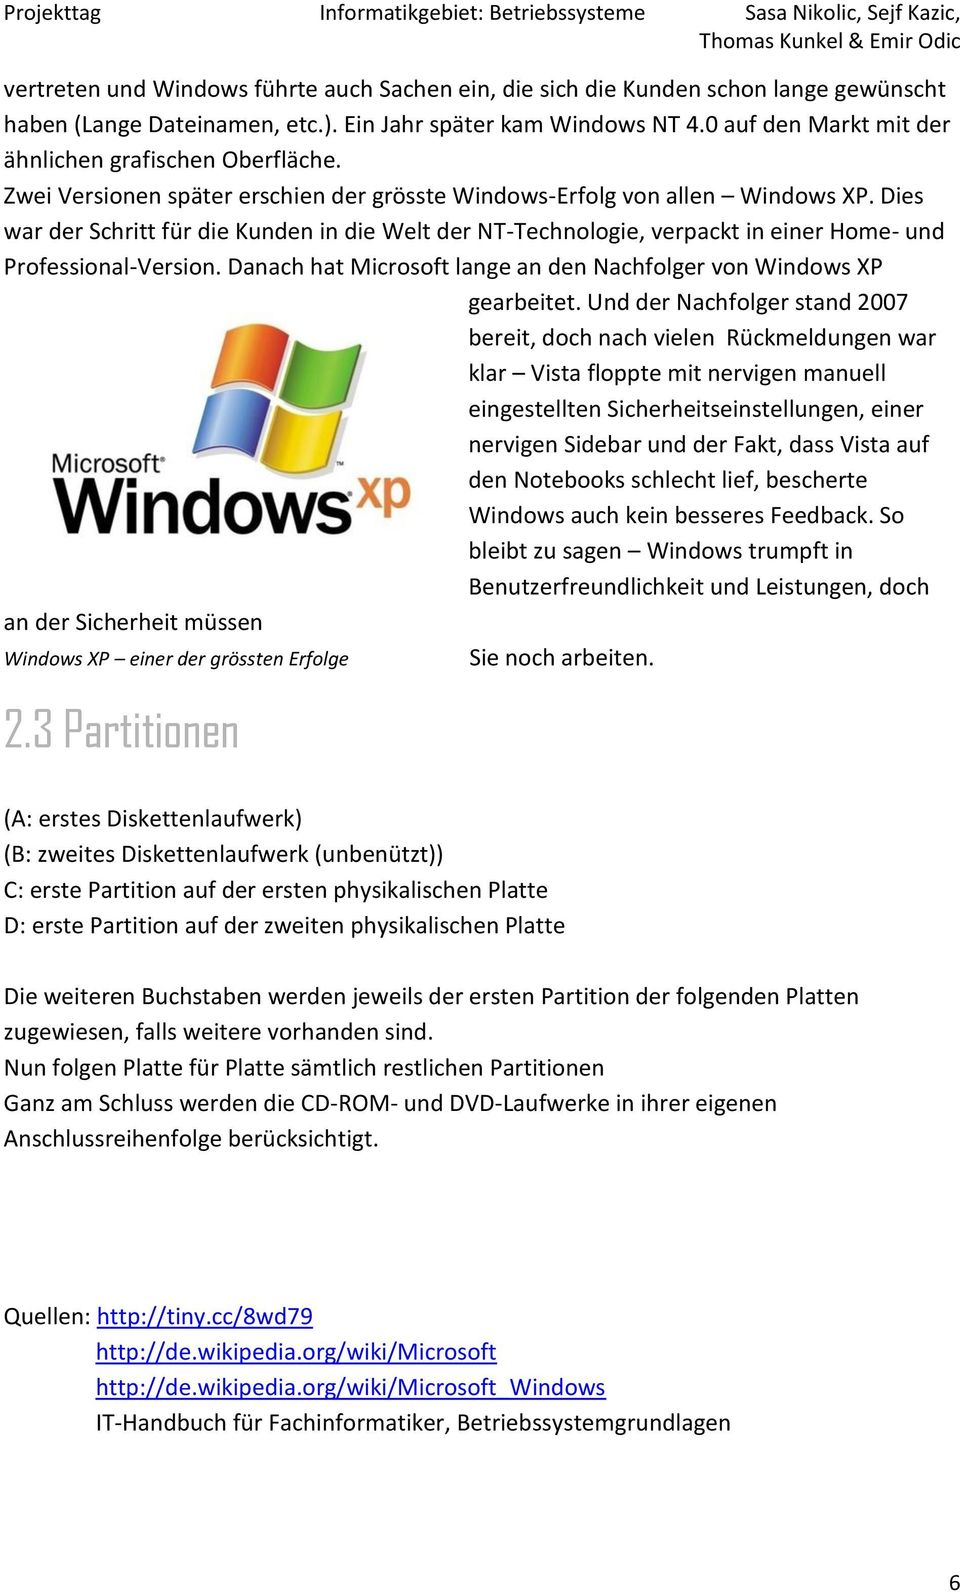 Dies war der Schritt für die Kunden in die Welt der NT-Technologie, verpackt in einer Home- und Professional-Version. Danach hat Microsoft lange an den Nachfolger von Windows XP gearbeitet.